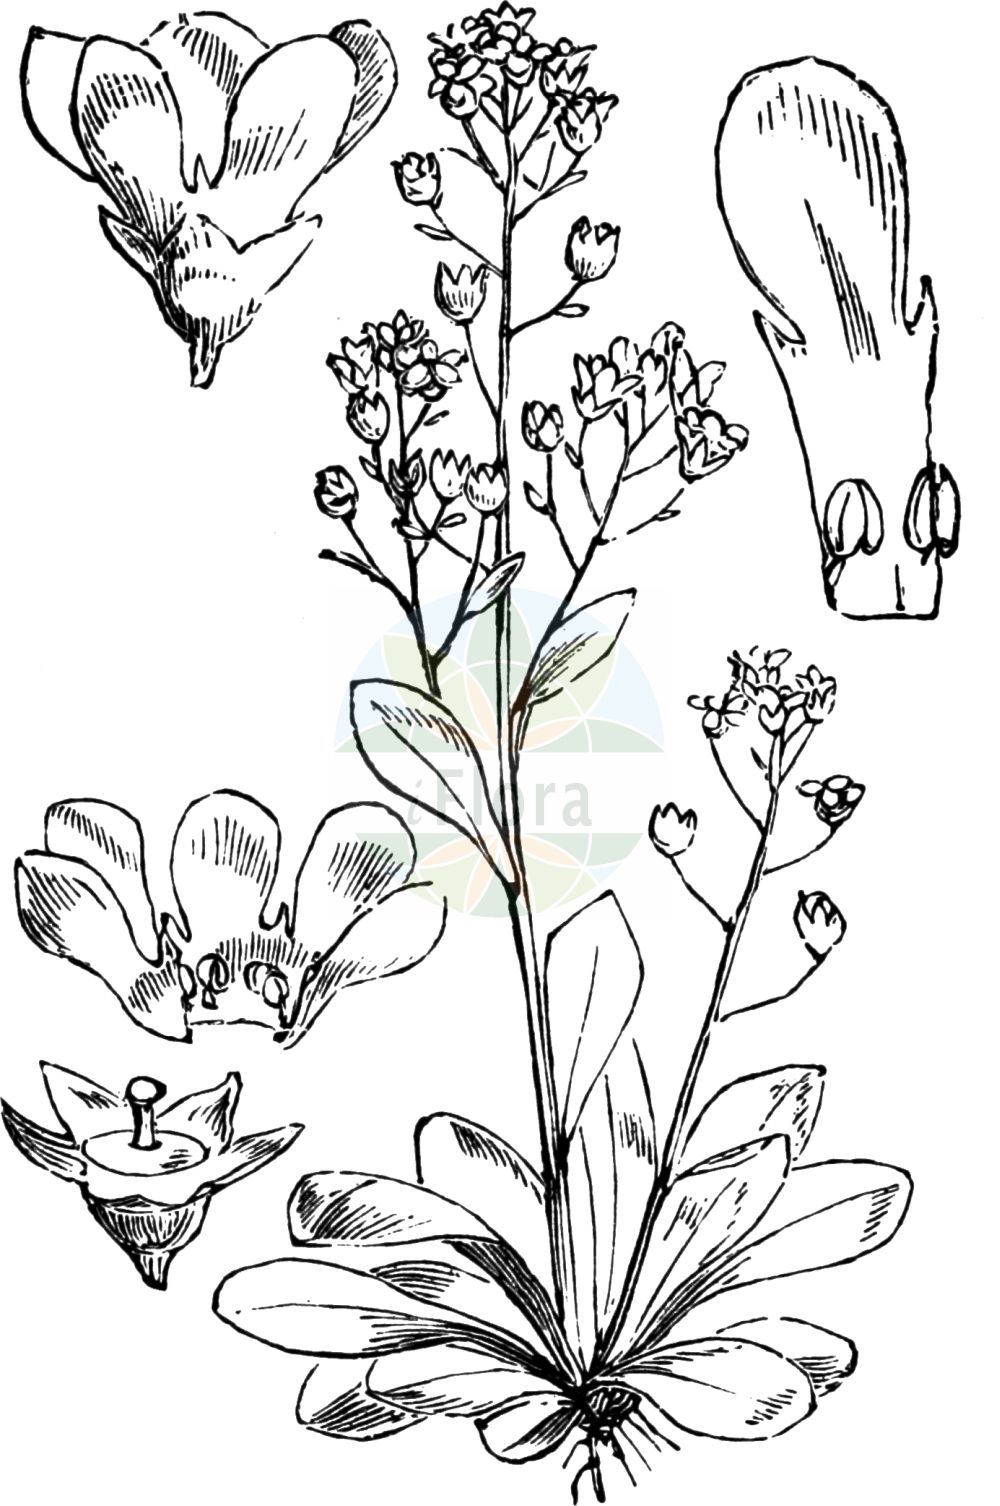 Historische Abbildung von Samolus valerandi (Salz-Bunge - Brookweed). Das Bild zeigt Blatt, Bluete, Frucht und Same. ---- Historical Drawing of Samolus valerandi (Salz-Bunge - Brookweed). The image is showing leaf, flower, fruit and seed.(Samolus valerandi,Salz-Bunge,Brookweed,Samolus valerandi,Salz-Bunge,Brookweed,Seaside Brookweed,Samolus,Salzbunge,Brookweed,Primulaceae,Schlüsselblumengewächse,Primrose family,Blatt,Bluete,Frucht,Same,leaf,flower,fruit,seed,Fitch et al. (1880))